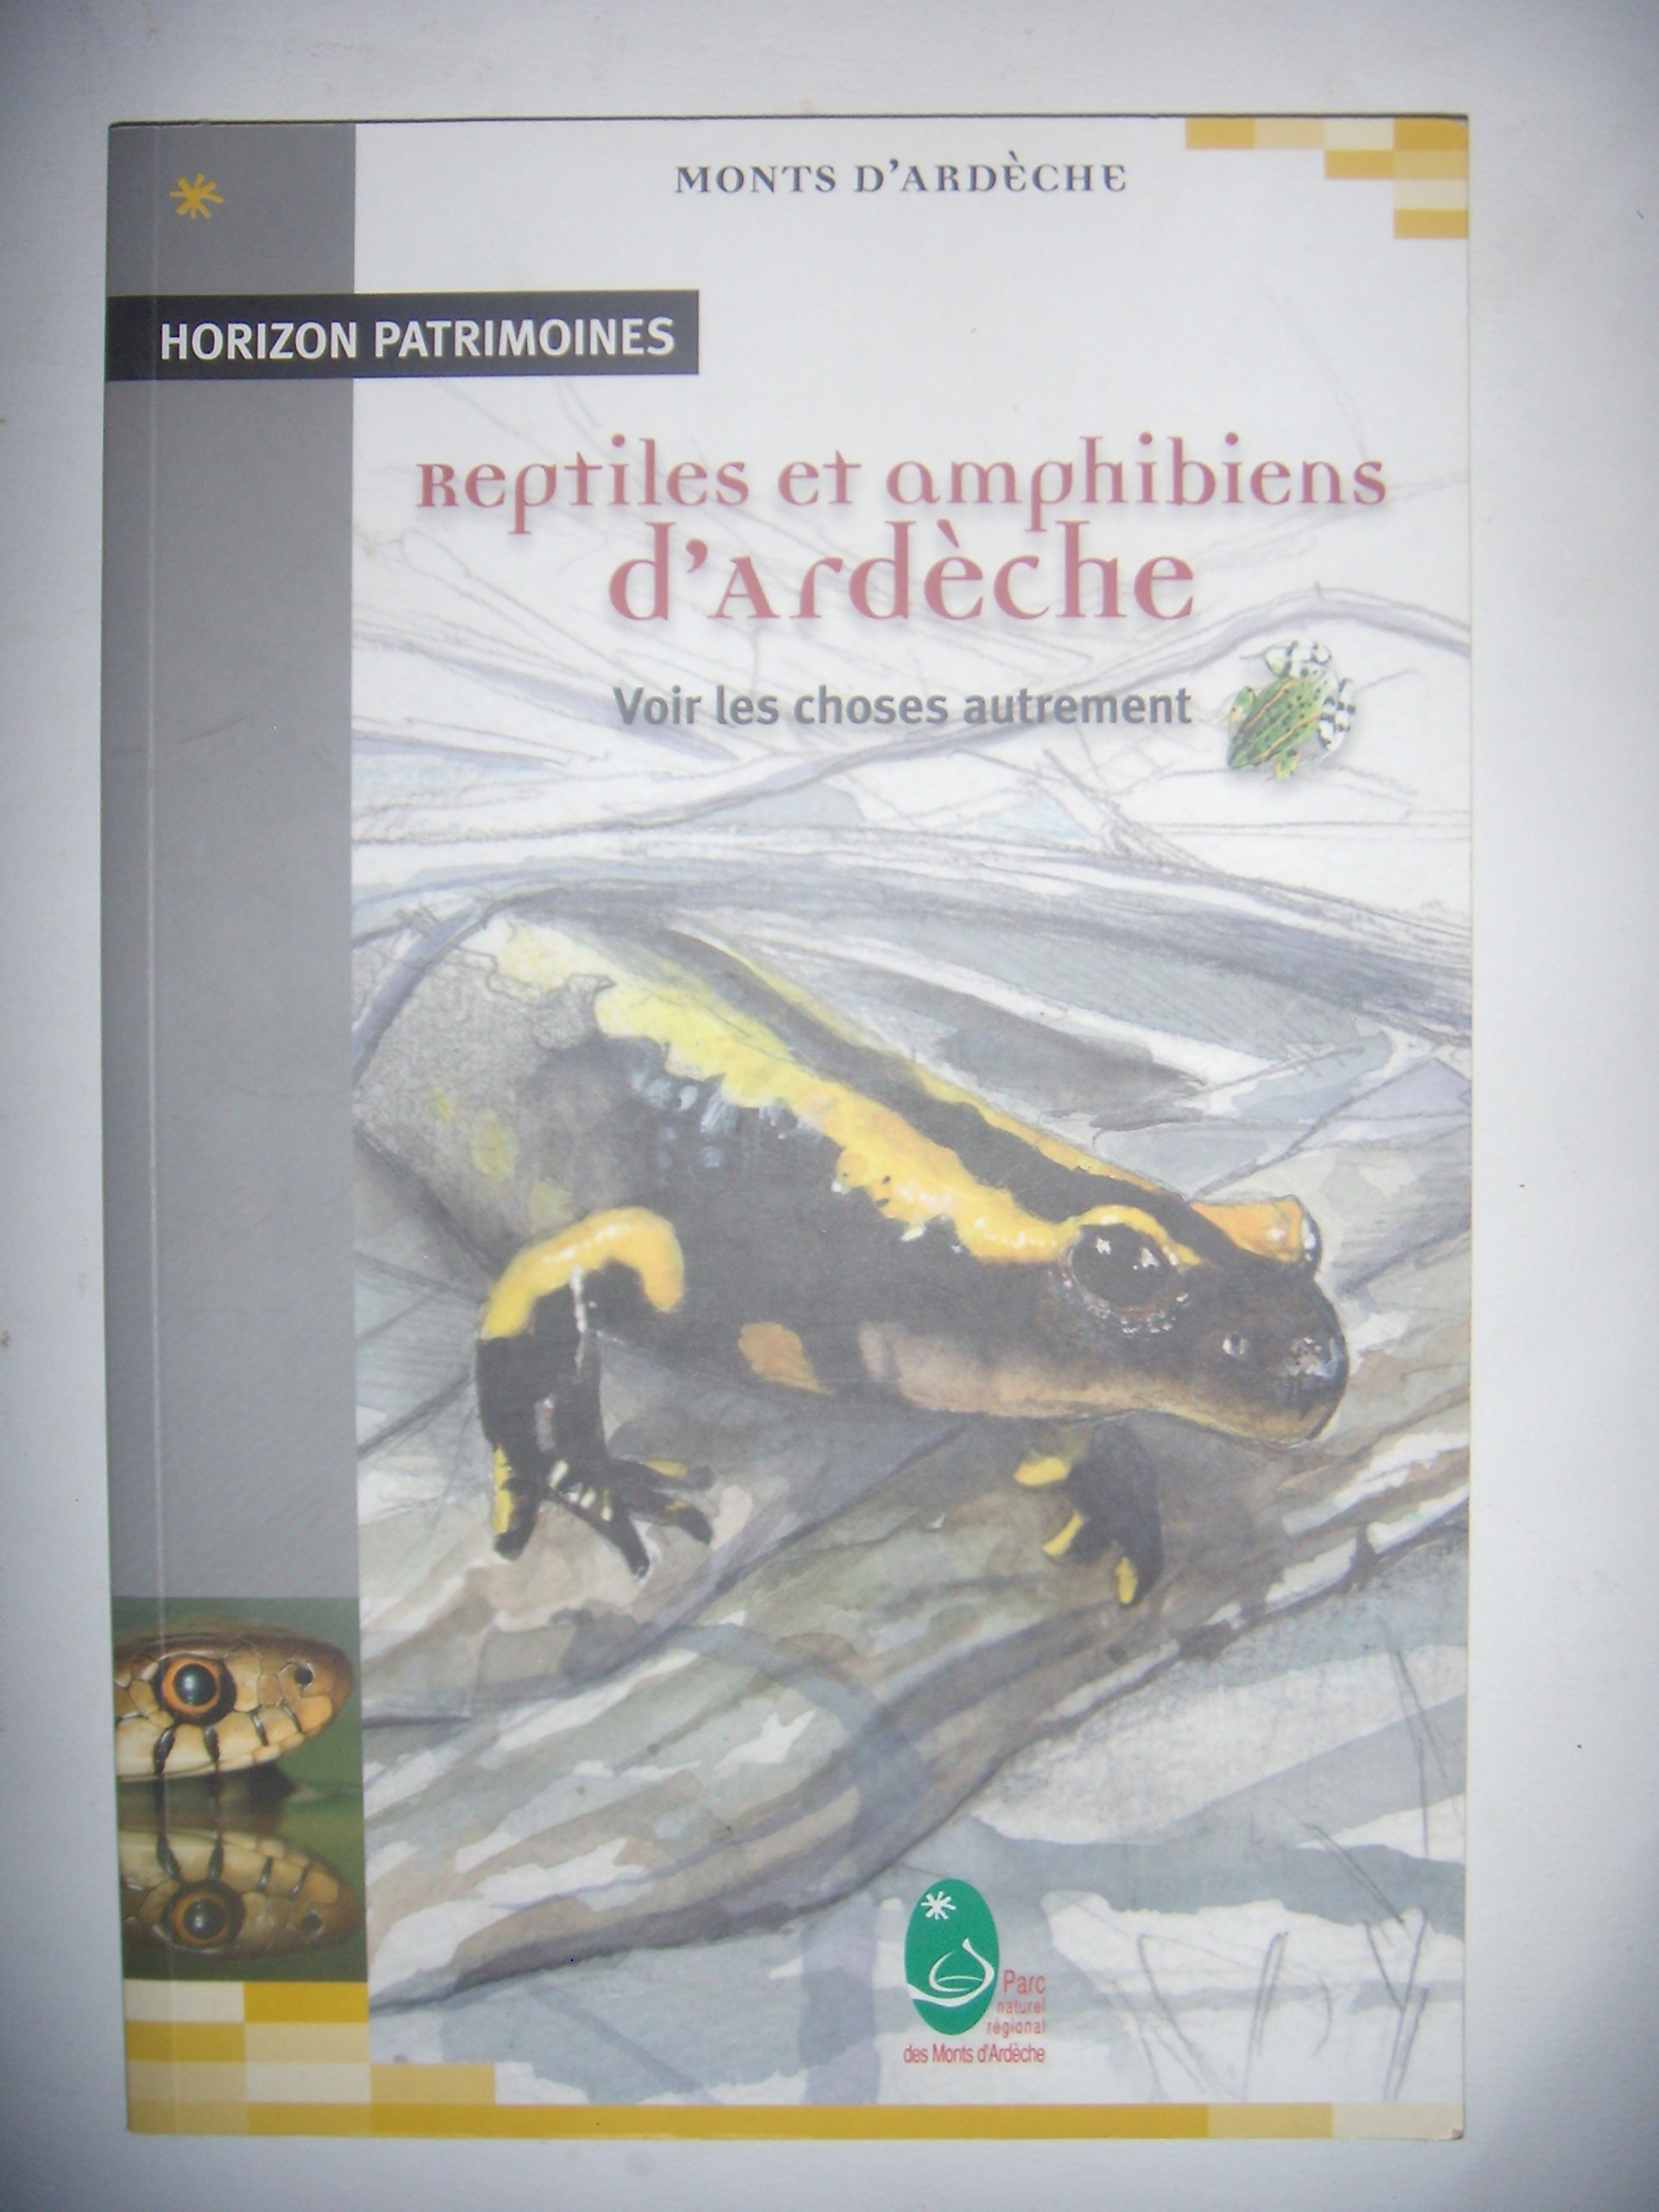 Reptiles & amphibiens d'Ardèche